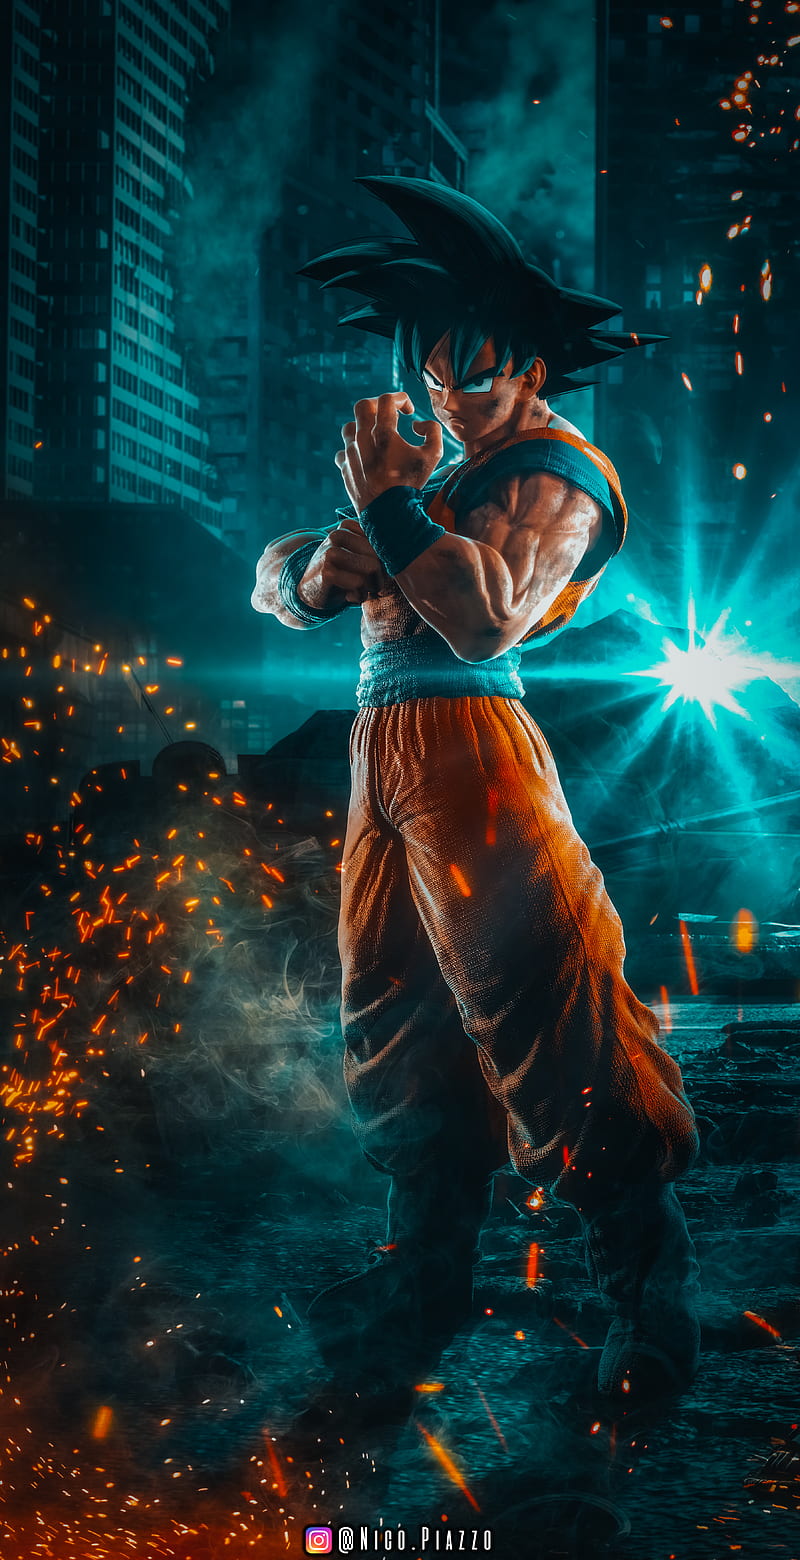 Goku - một nhân vật anh hùng trong bộ anime nổi tiếng Dragon Ball, với sức mạnh phi thường và võ thuật siêu nhiên. Đừng bỏ lỡ cơ hội để xem những hình ảnh nổi bật của Goku trên màn hình, để cảm nhận được sự đẳng cấp và tinh thần không ngừng phấn đấu.